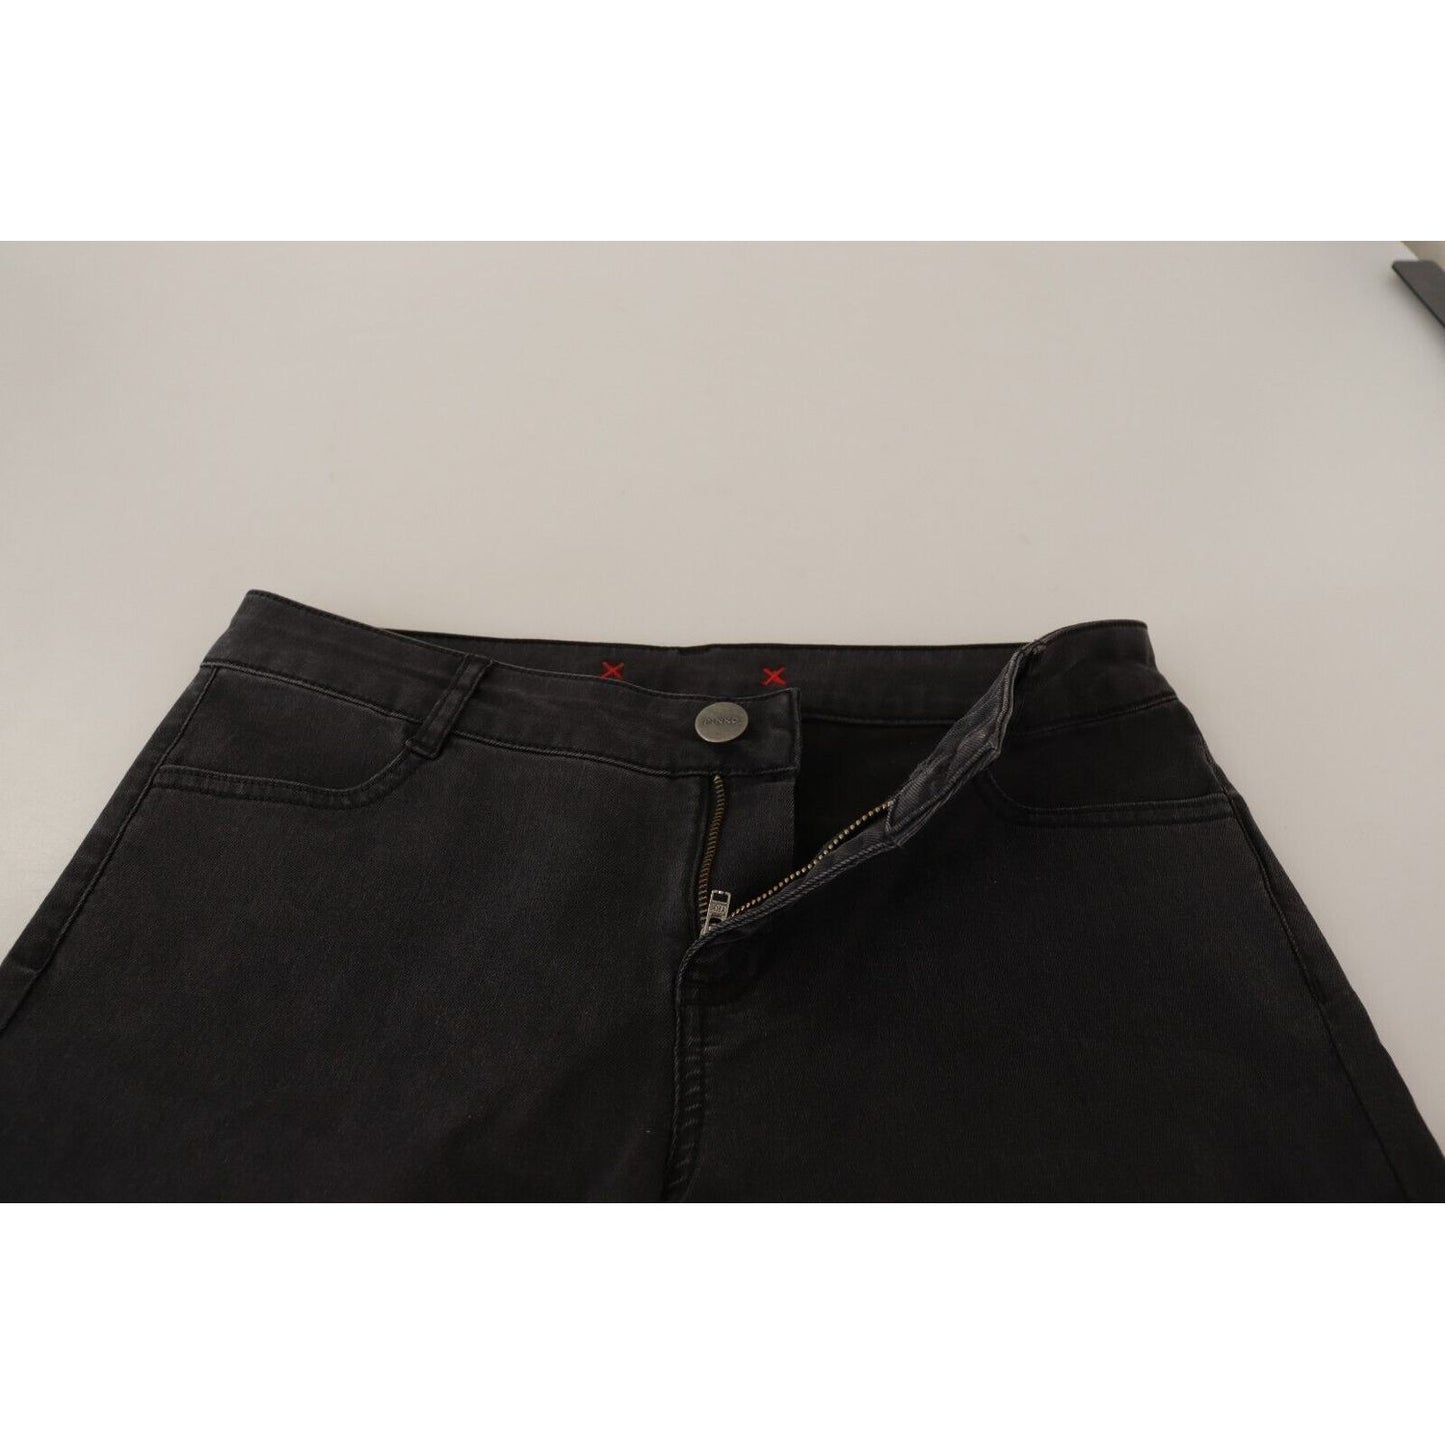 PINKO Chic Mid Waist Skinny Black Denim Jeans & Pants black-cotton-stretch-skinny-mid-waist-women-denim-jeans s-l1600-3-90-b7d9f8cb-cfc.jpg